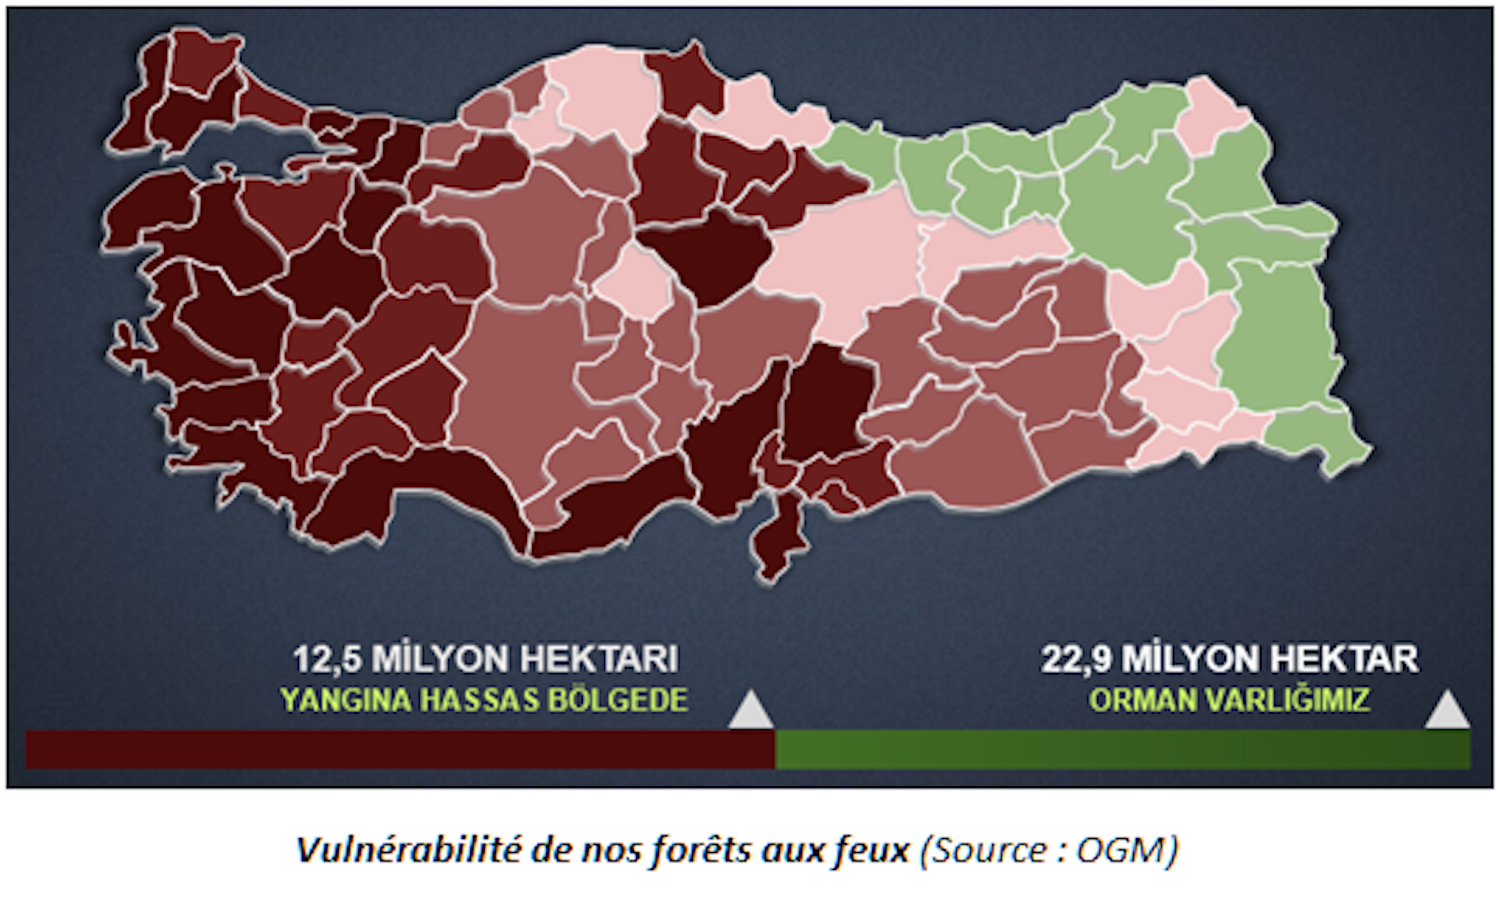 Vulnérabilité des forêts turques aux incendies (rouge foncé = très vulnérable) © OGM